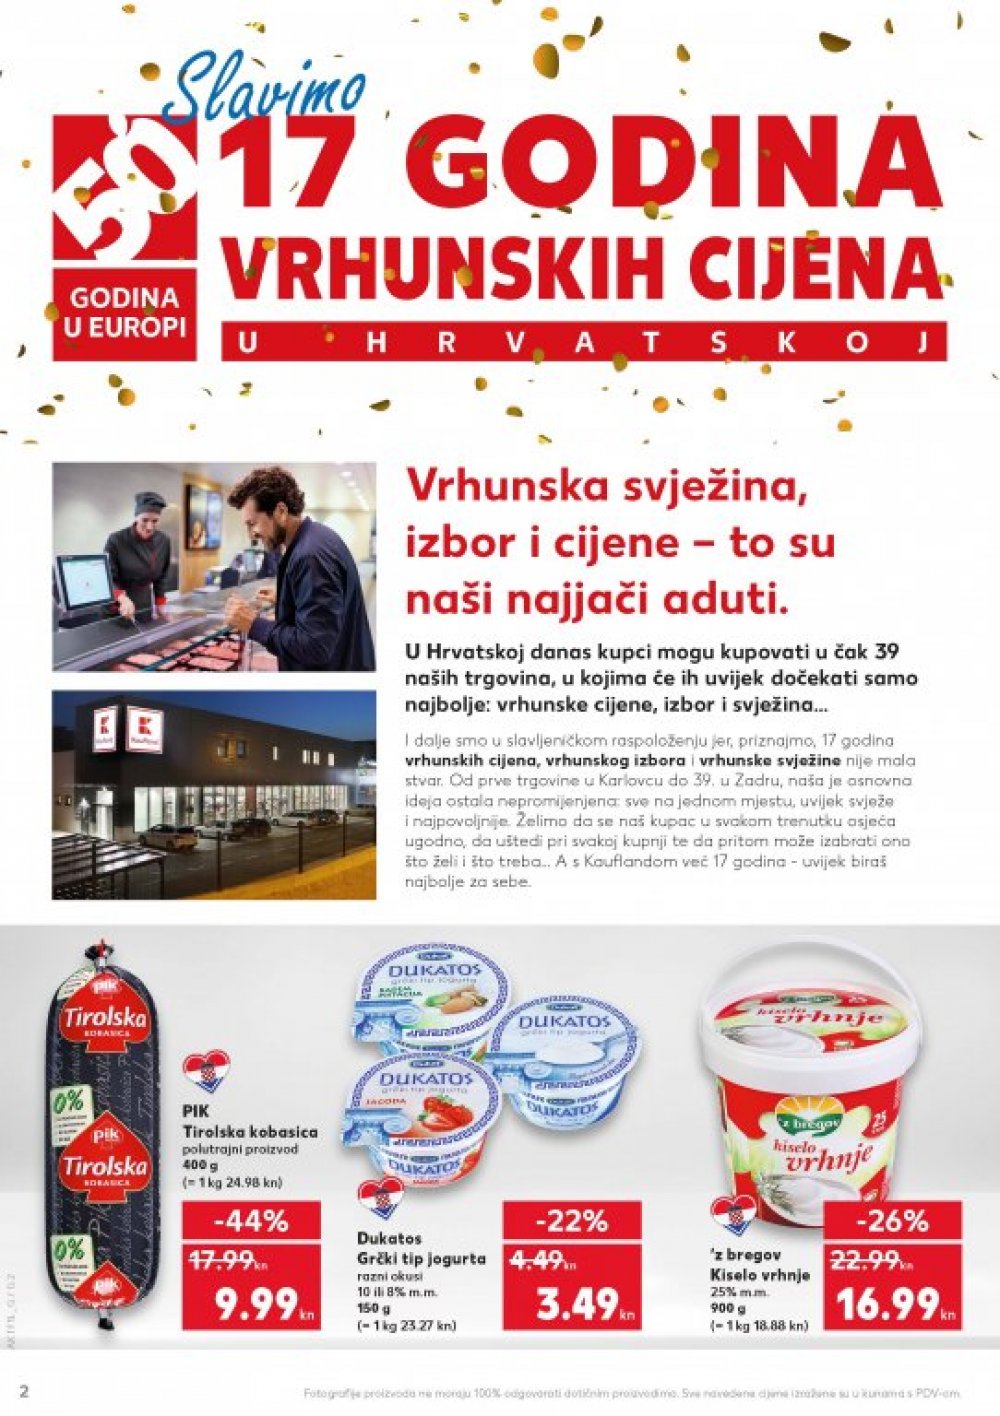 Kaufland katalog Akcija Čk od 22.02.-28.02.2018.